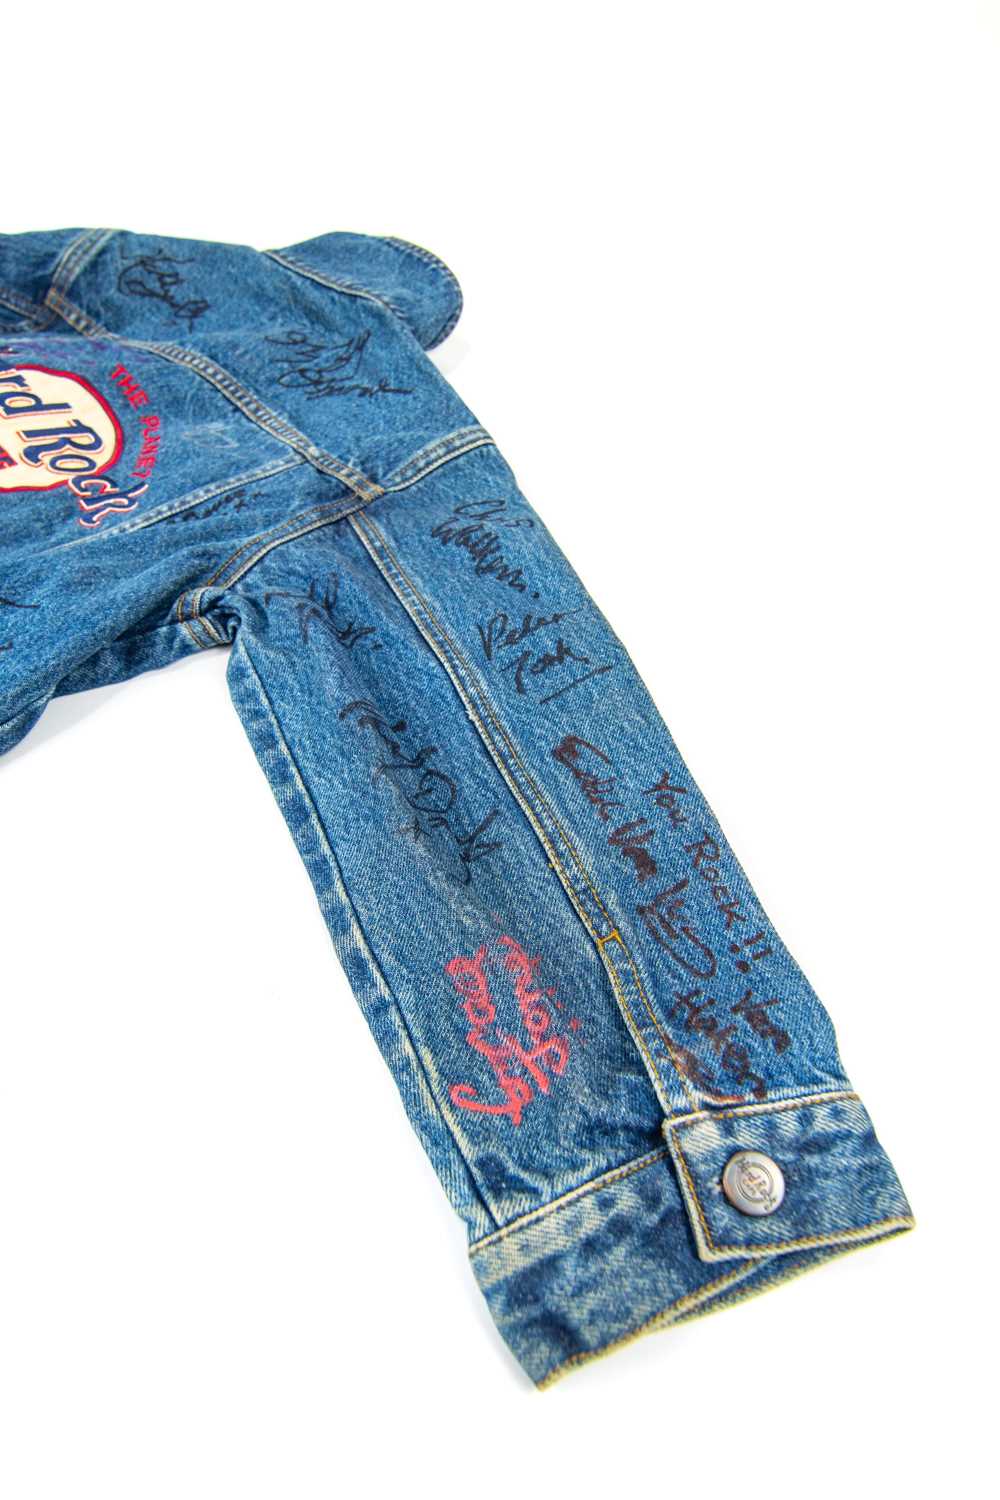 An extensively signed 'Hard Rock Cafe' Las Vegas, denim jacket. - Image 8 of 14